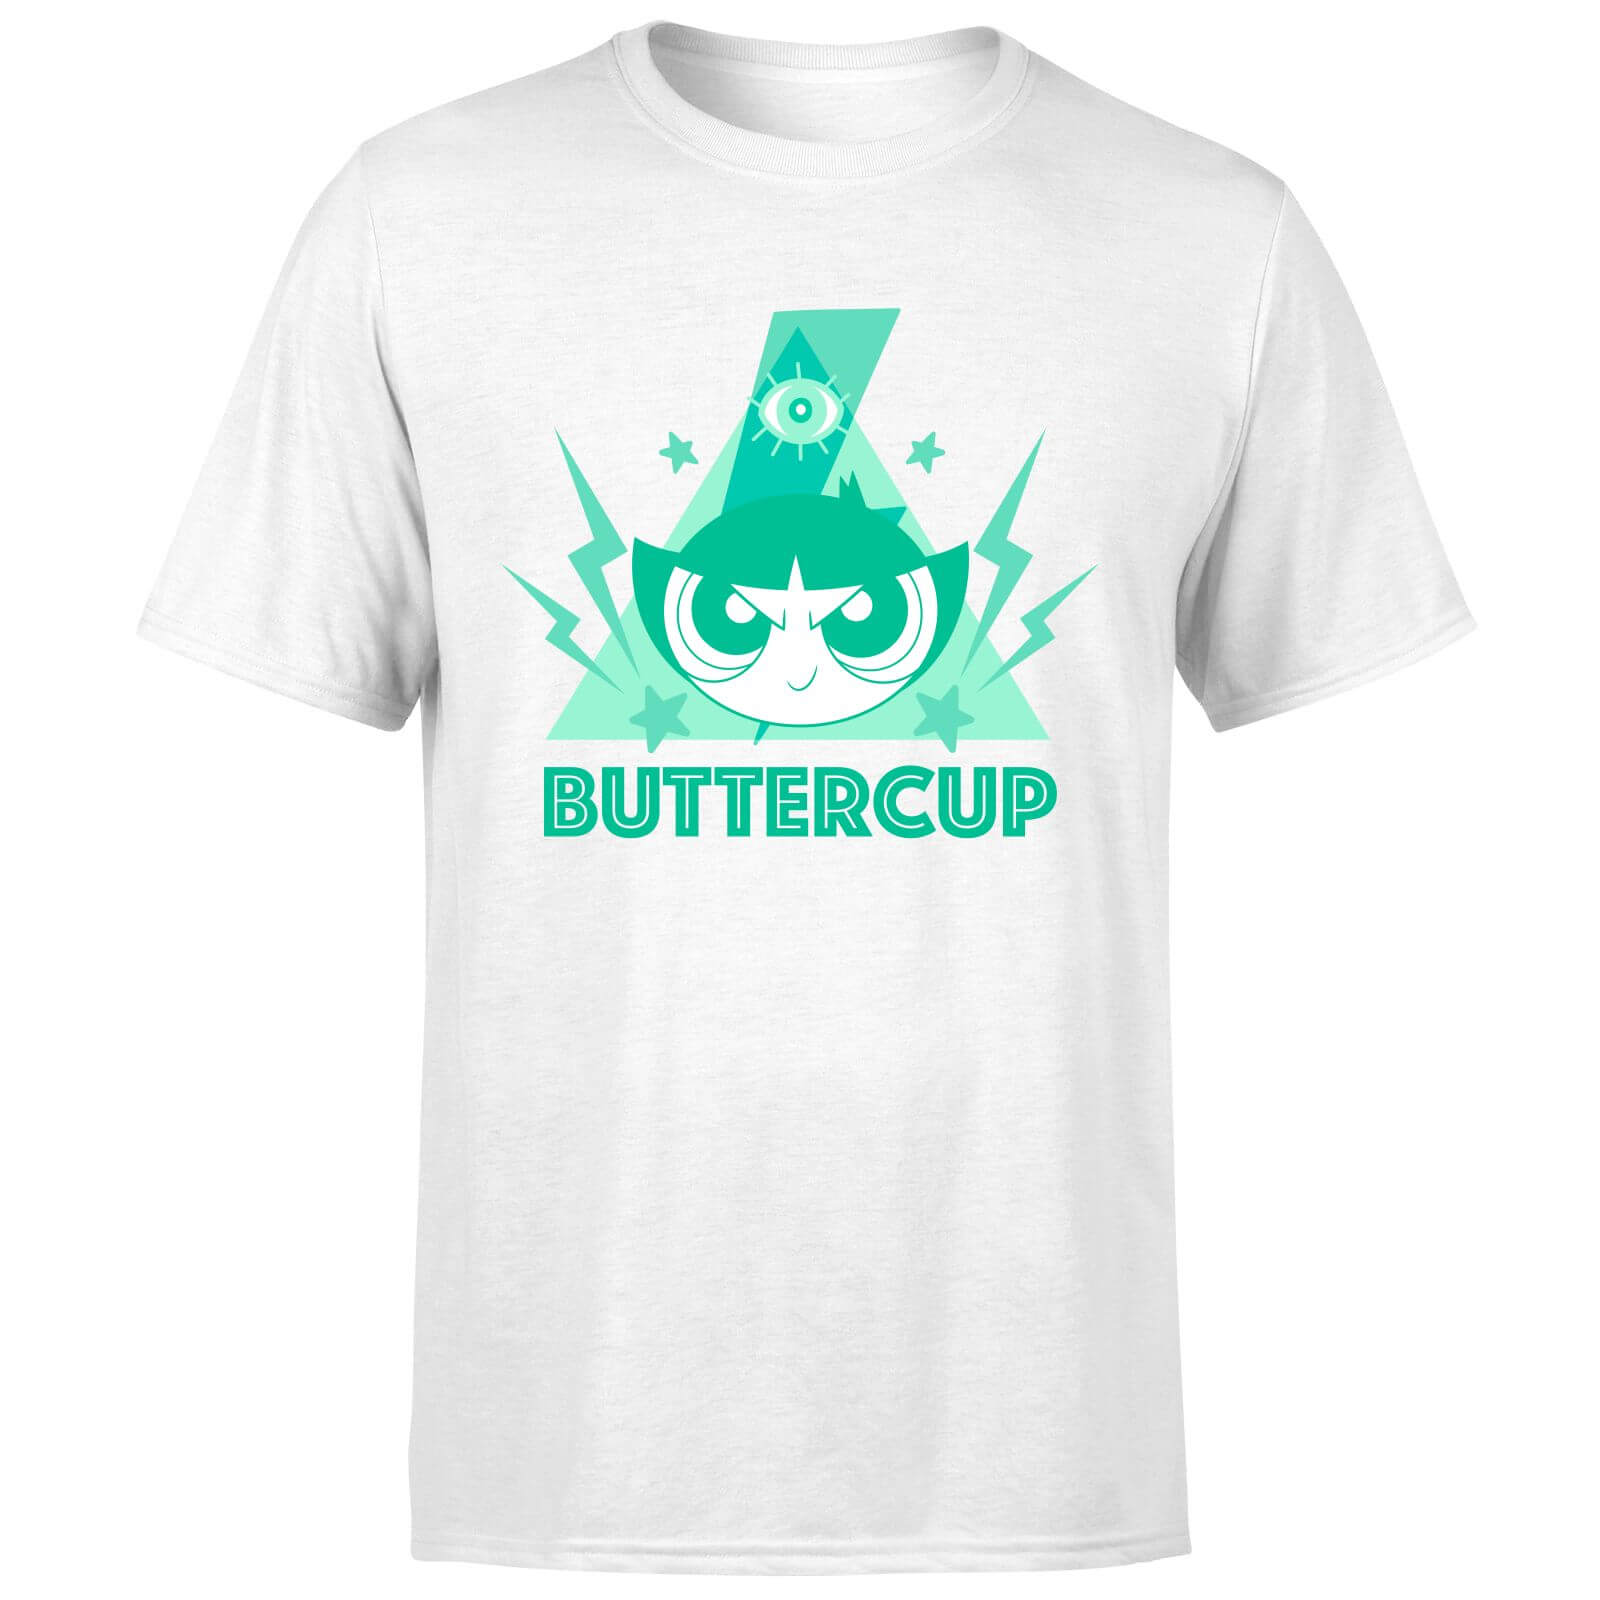 The Powerpuff Girls Buttercup Unisex T-Shirt - White - XS - White